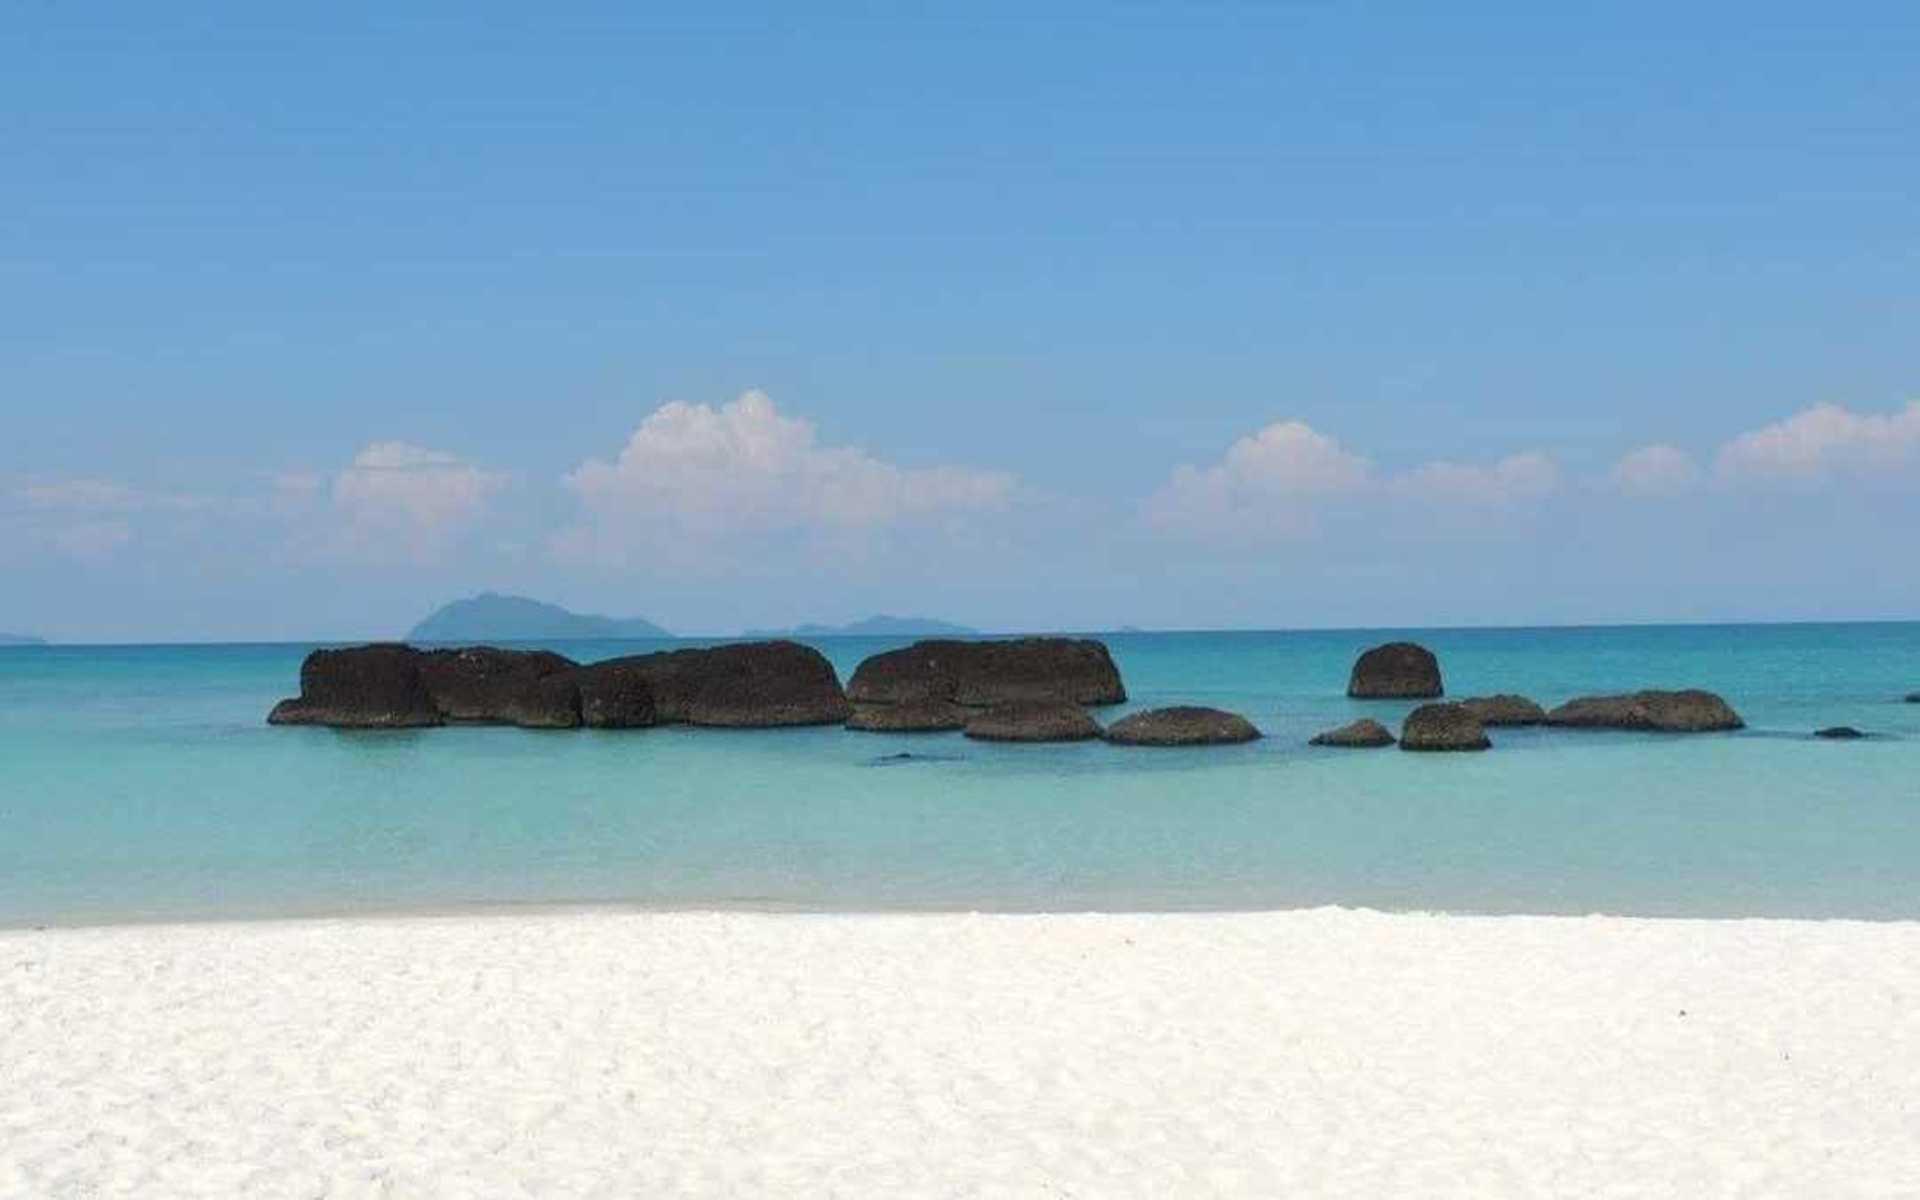 Lovisa Lago har skickat in den här härliga bilden från ön Koh Kham i Thailand.